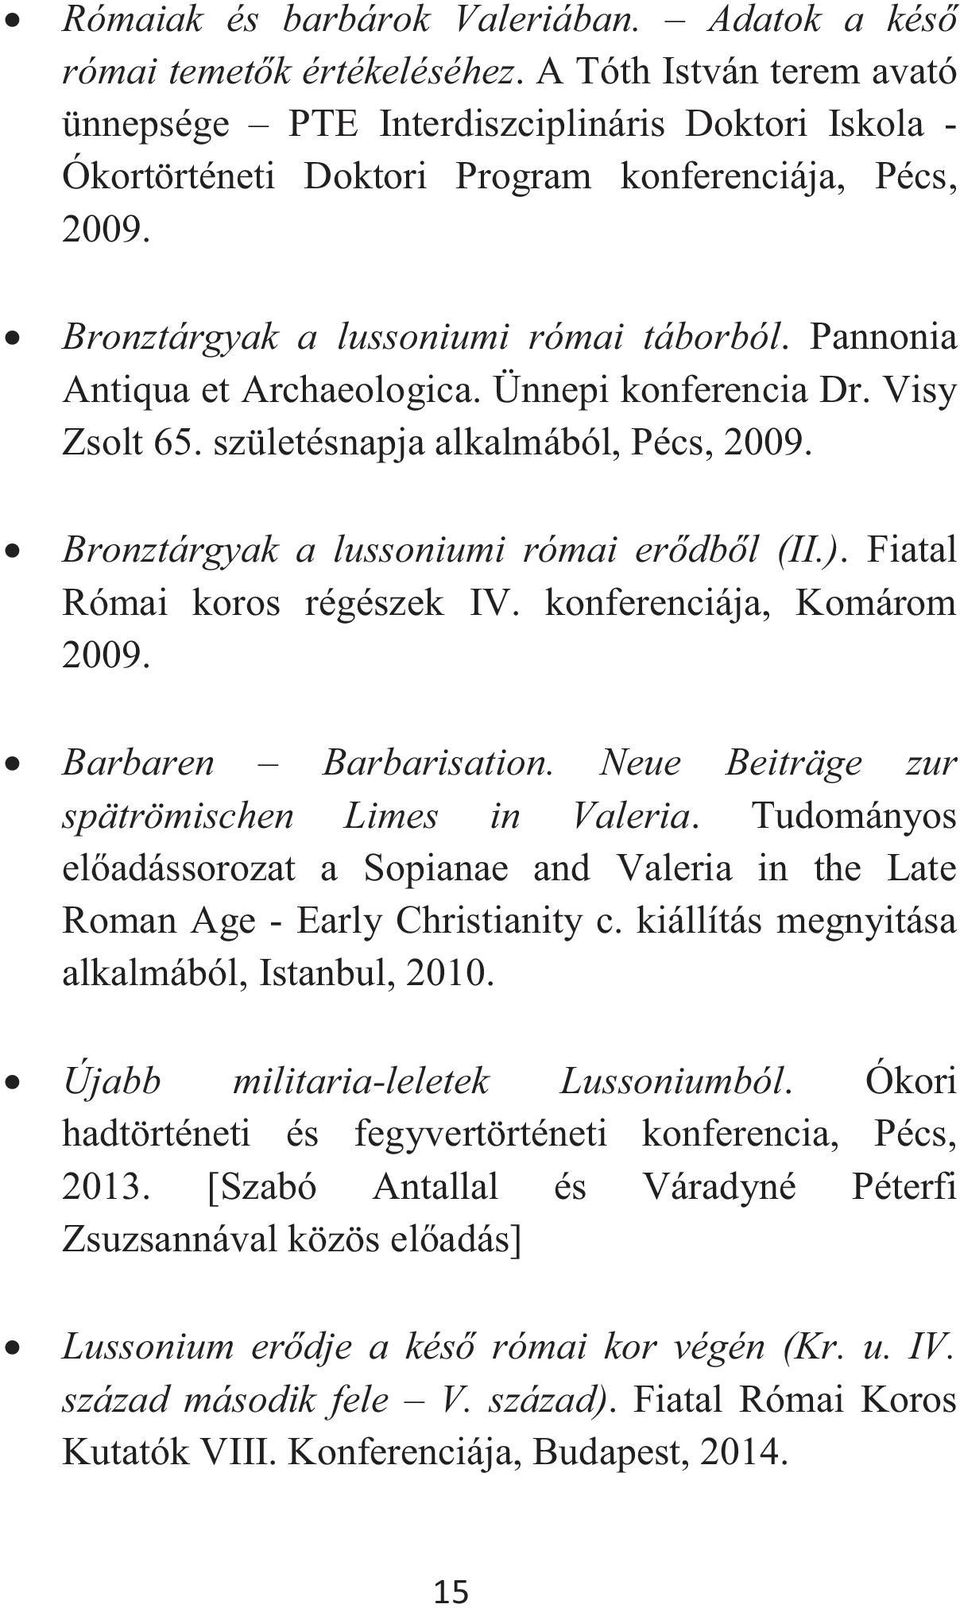 Pannonia Antiqua et Archaeologica. Ünnepi konferencia Dr. Visy Zsolt 65. születésnapja alkalmából, Pécs, 2009. Bronztárgyak a lussoniumi római erődből (II.). Fiatal Római koros régészek IV.